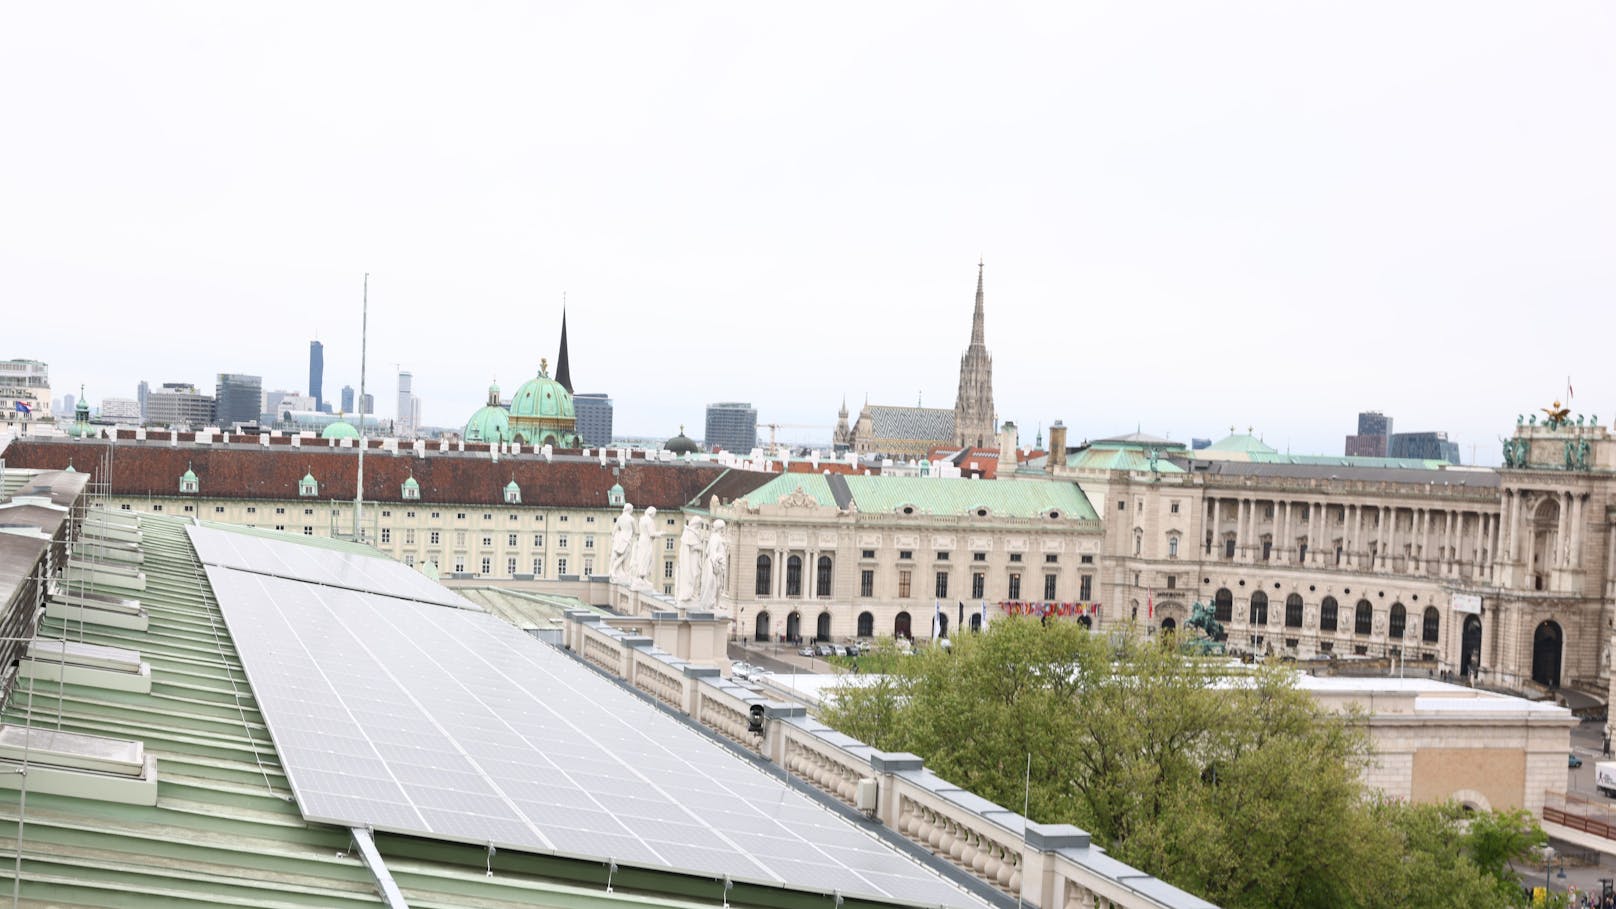 Die Anfang April ausgebaute Photovoltaikanlage hat nun eine Leistung von 300 kWp.